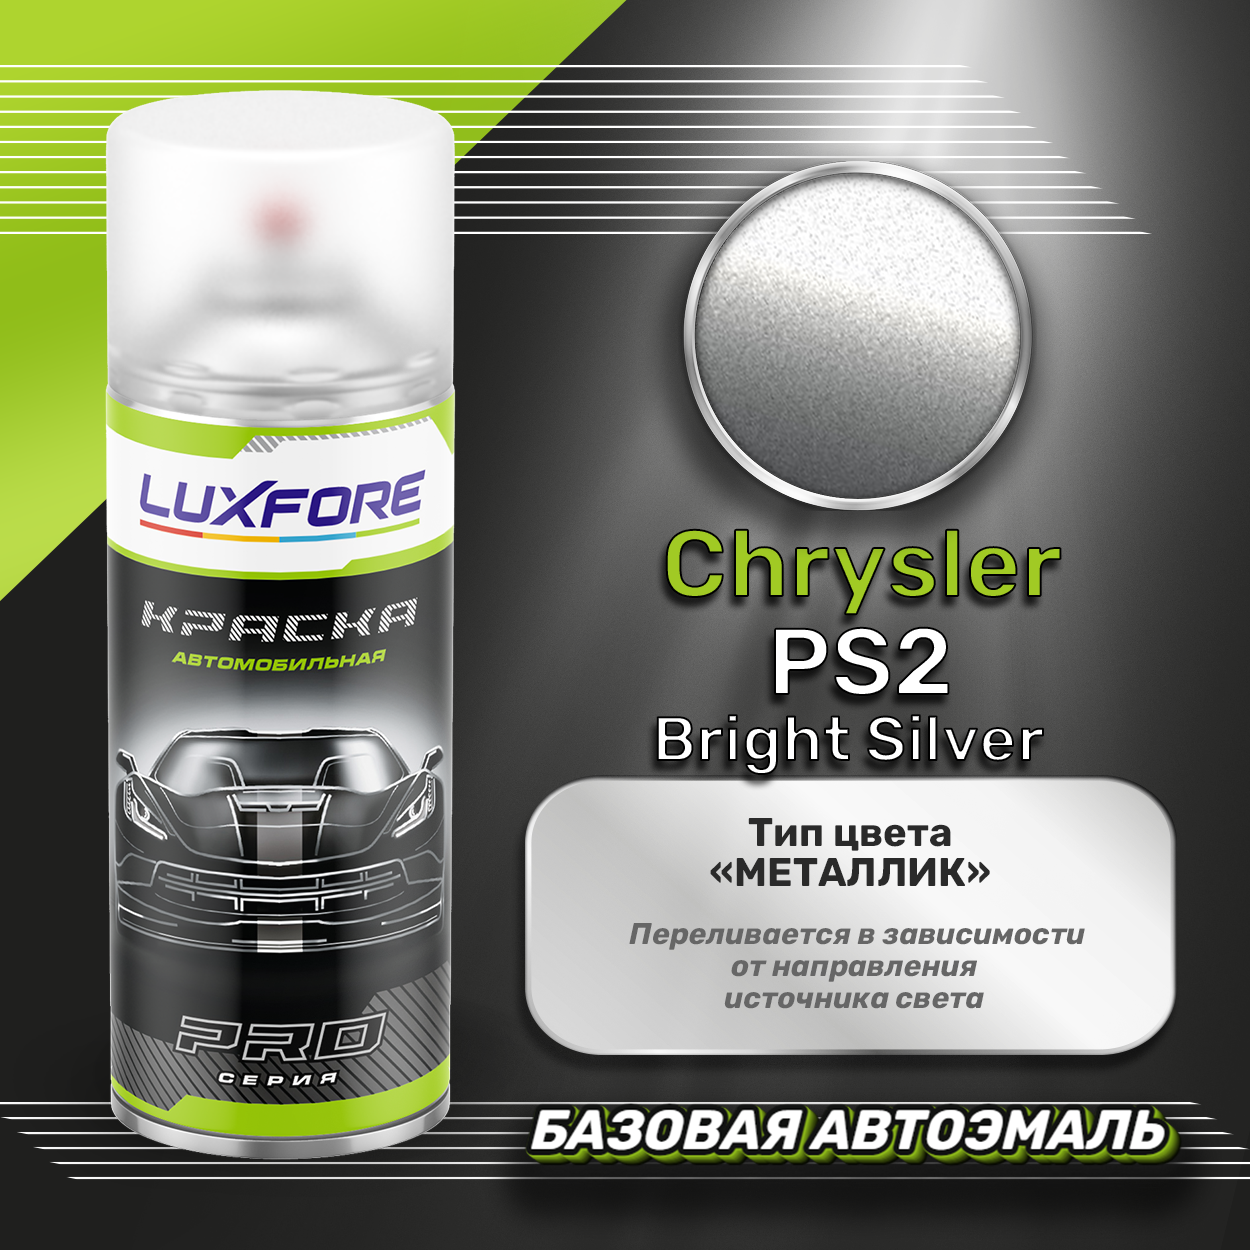 Luxfore аэрозольная краска Chrysler PS2 Bright Silver 400 мл